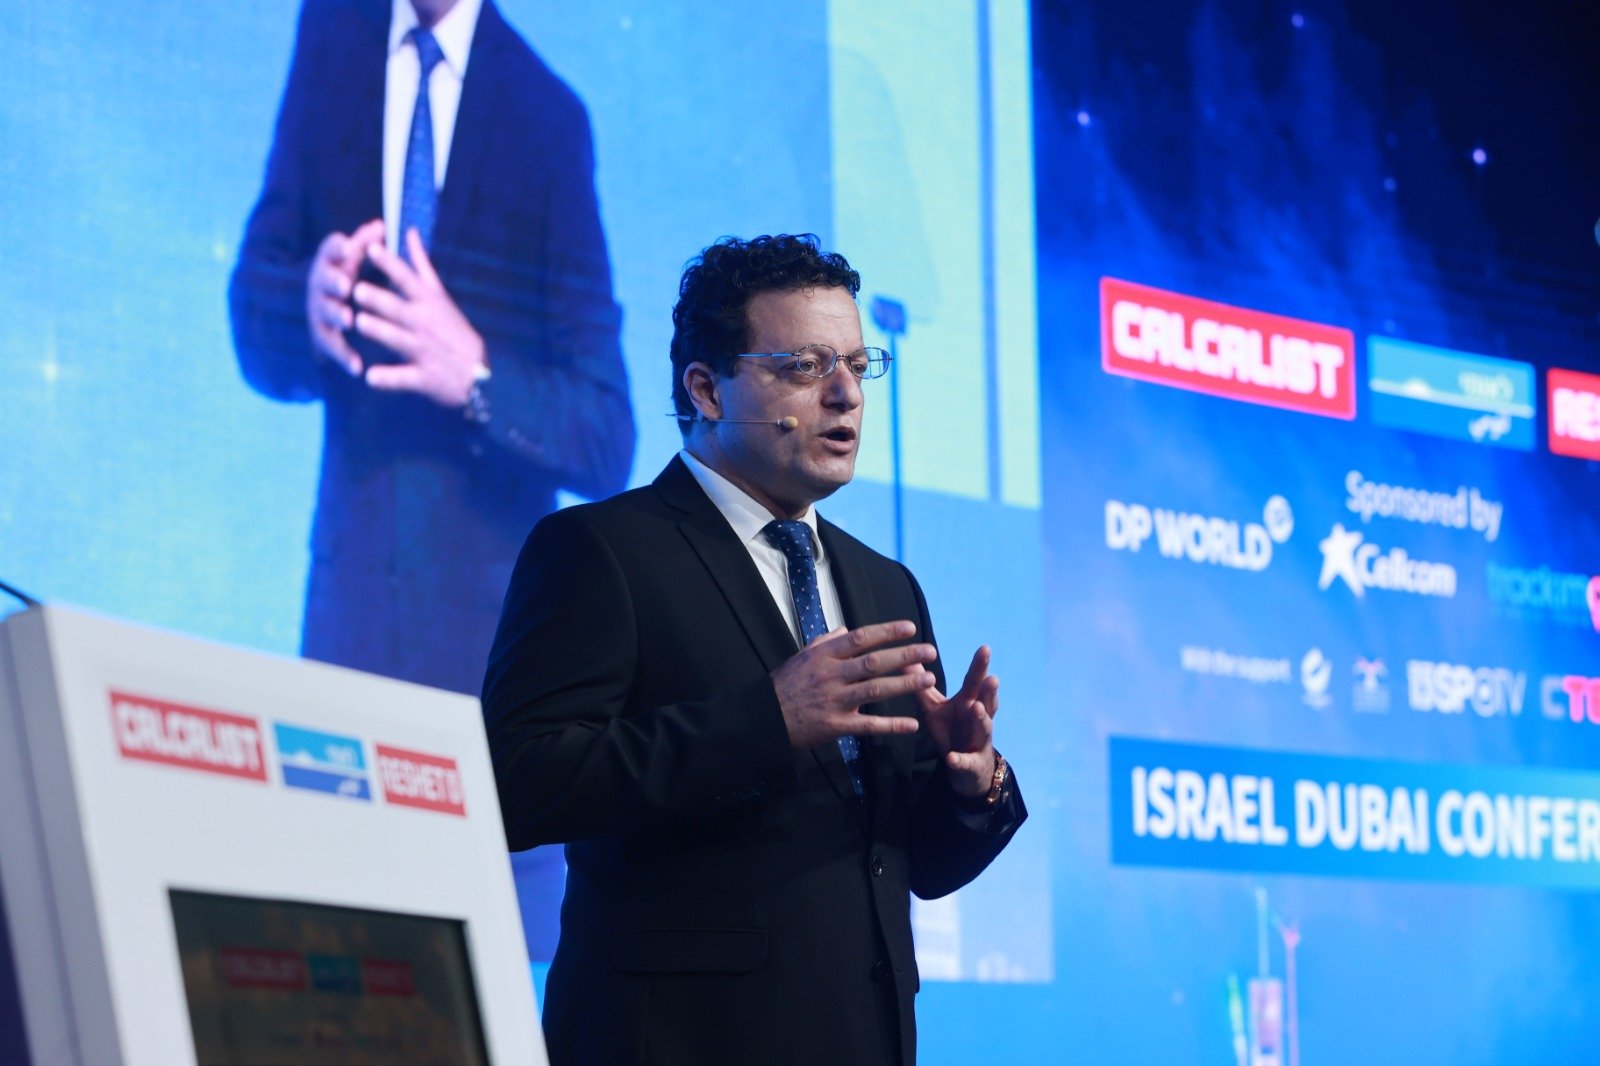 د. سامر حاج يحيى رئيس بنك لئومي يفتتح المؤتمر الأول "إسرائيل – دبي": "أينَما حلَّ السلامُ حلَ الاستقرارُ والازدهارُ الاقتصاديُ"-2